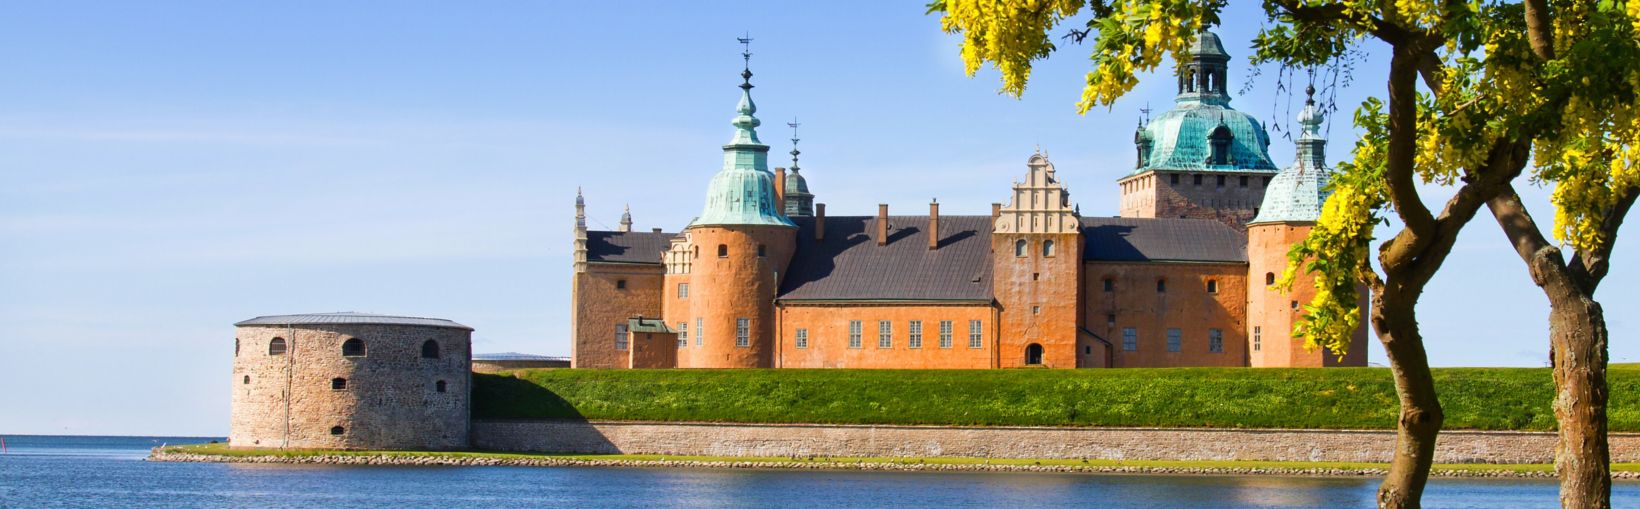 Ūdens ieskauta viduslaiku pils ar sarkanām sienām un ziliem tornīšiem saulainā dienā Kalmarā, Zviedrijā.